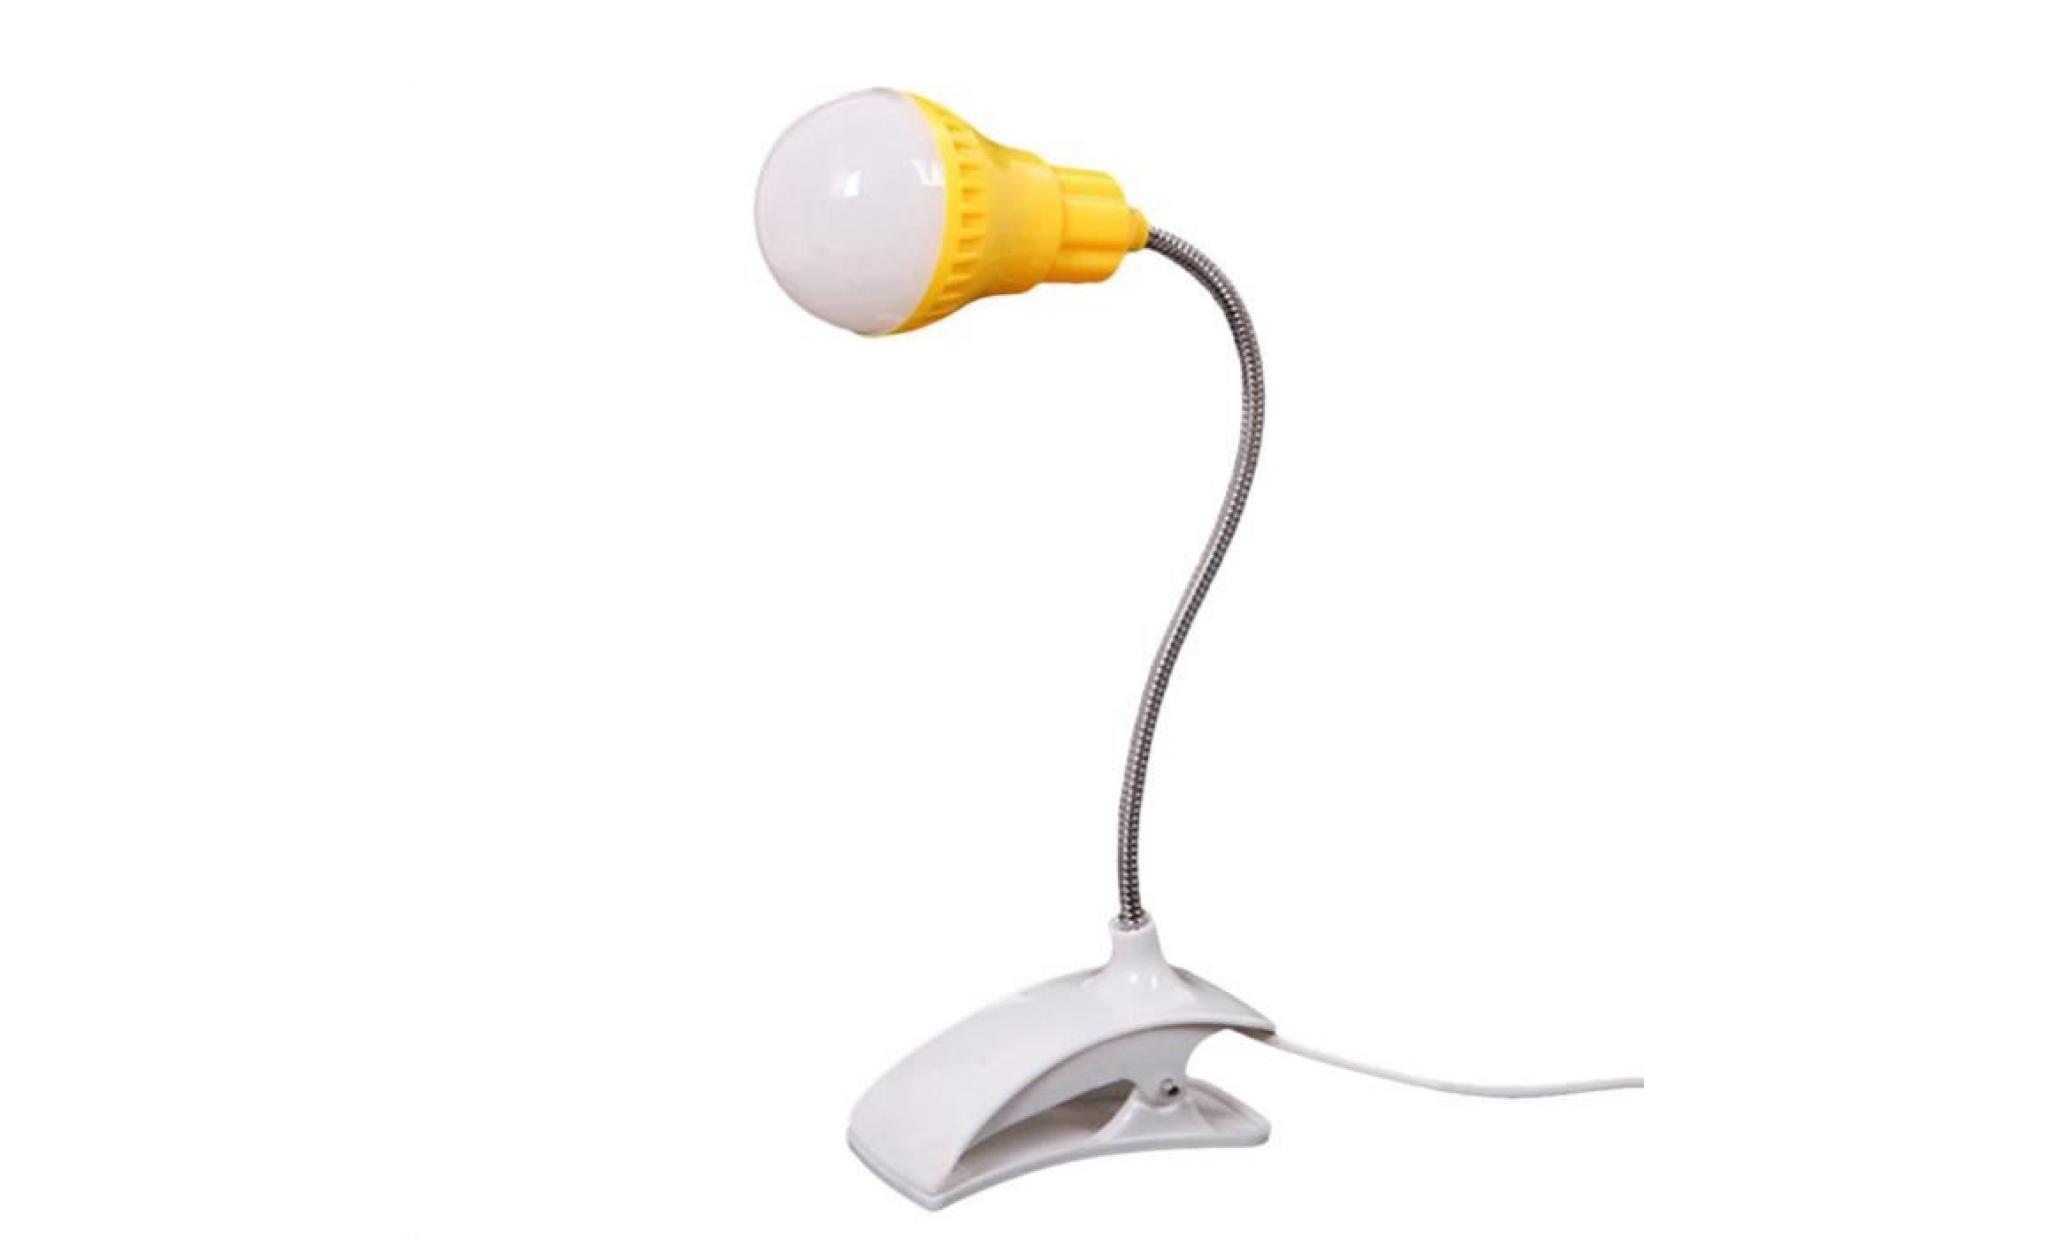 nouveau support de table lampe usb du personnel étudiant de lecture table bureau lampe ye @ww1894 pas cher